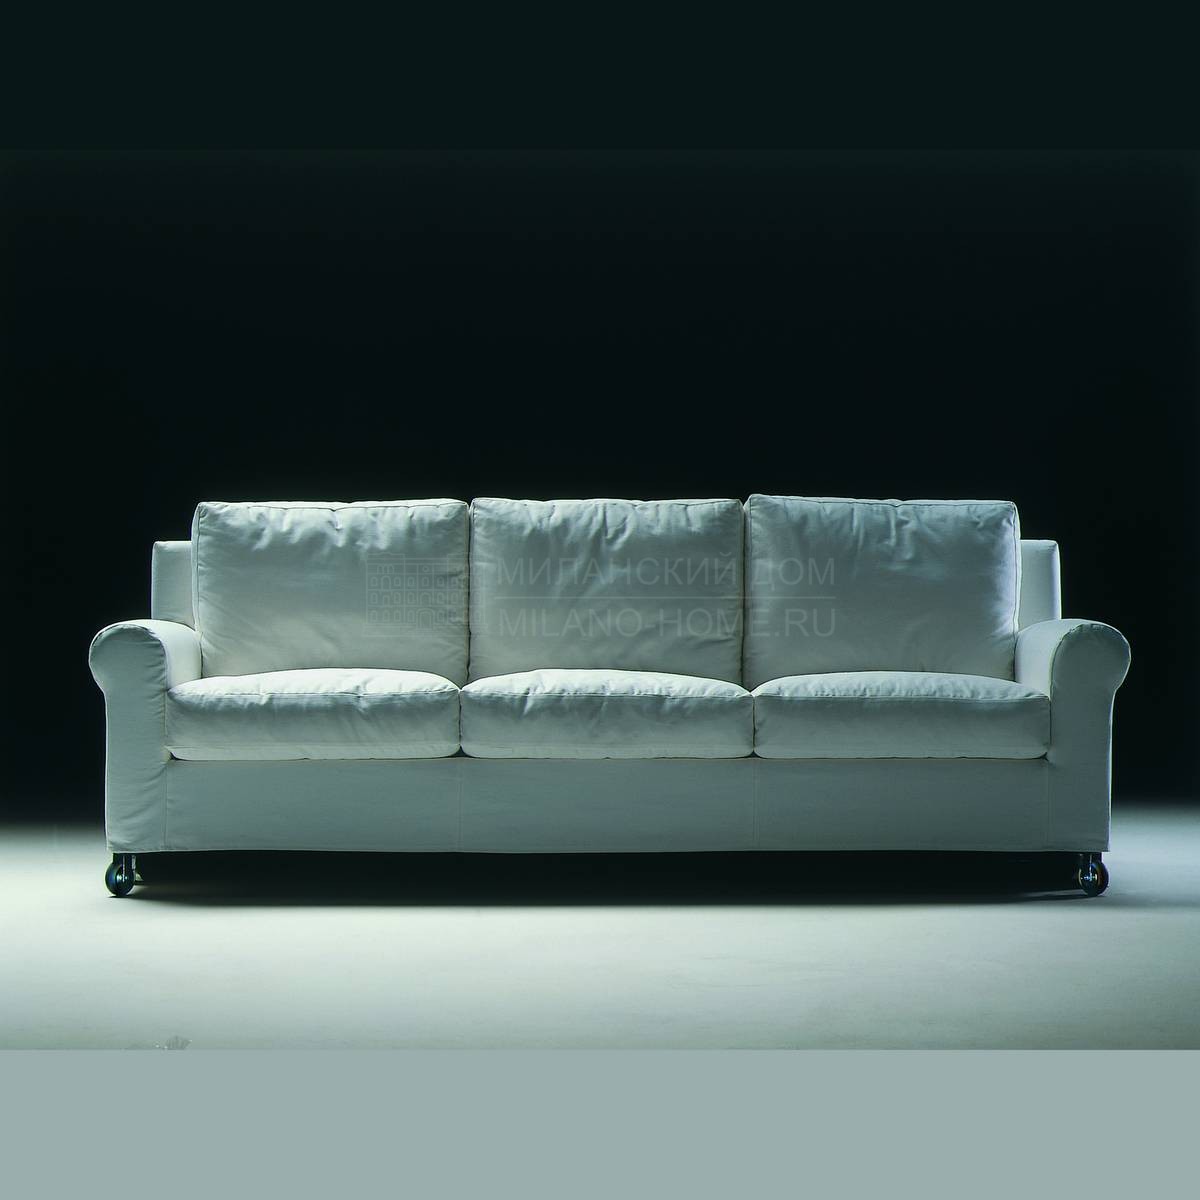 Прямой диван Ugomaria /sofa из Италии фабрики FLEXFORM